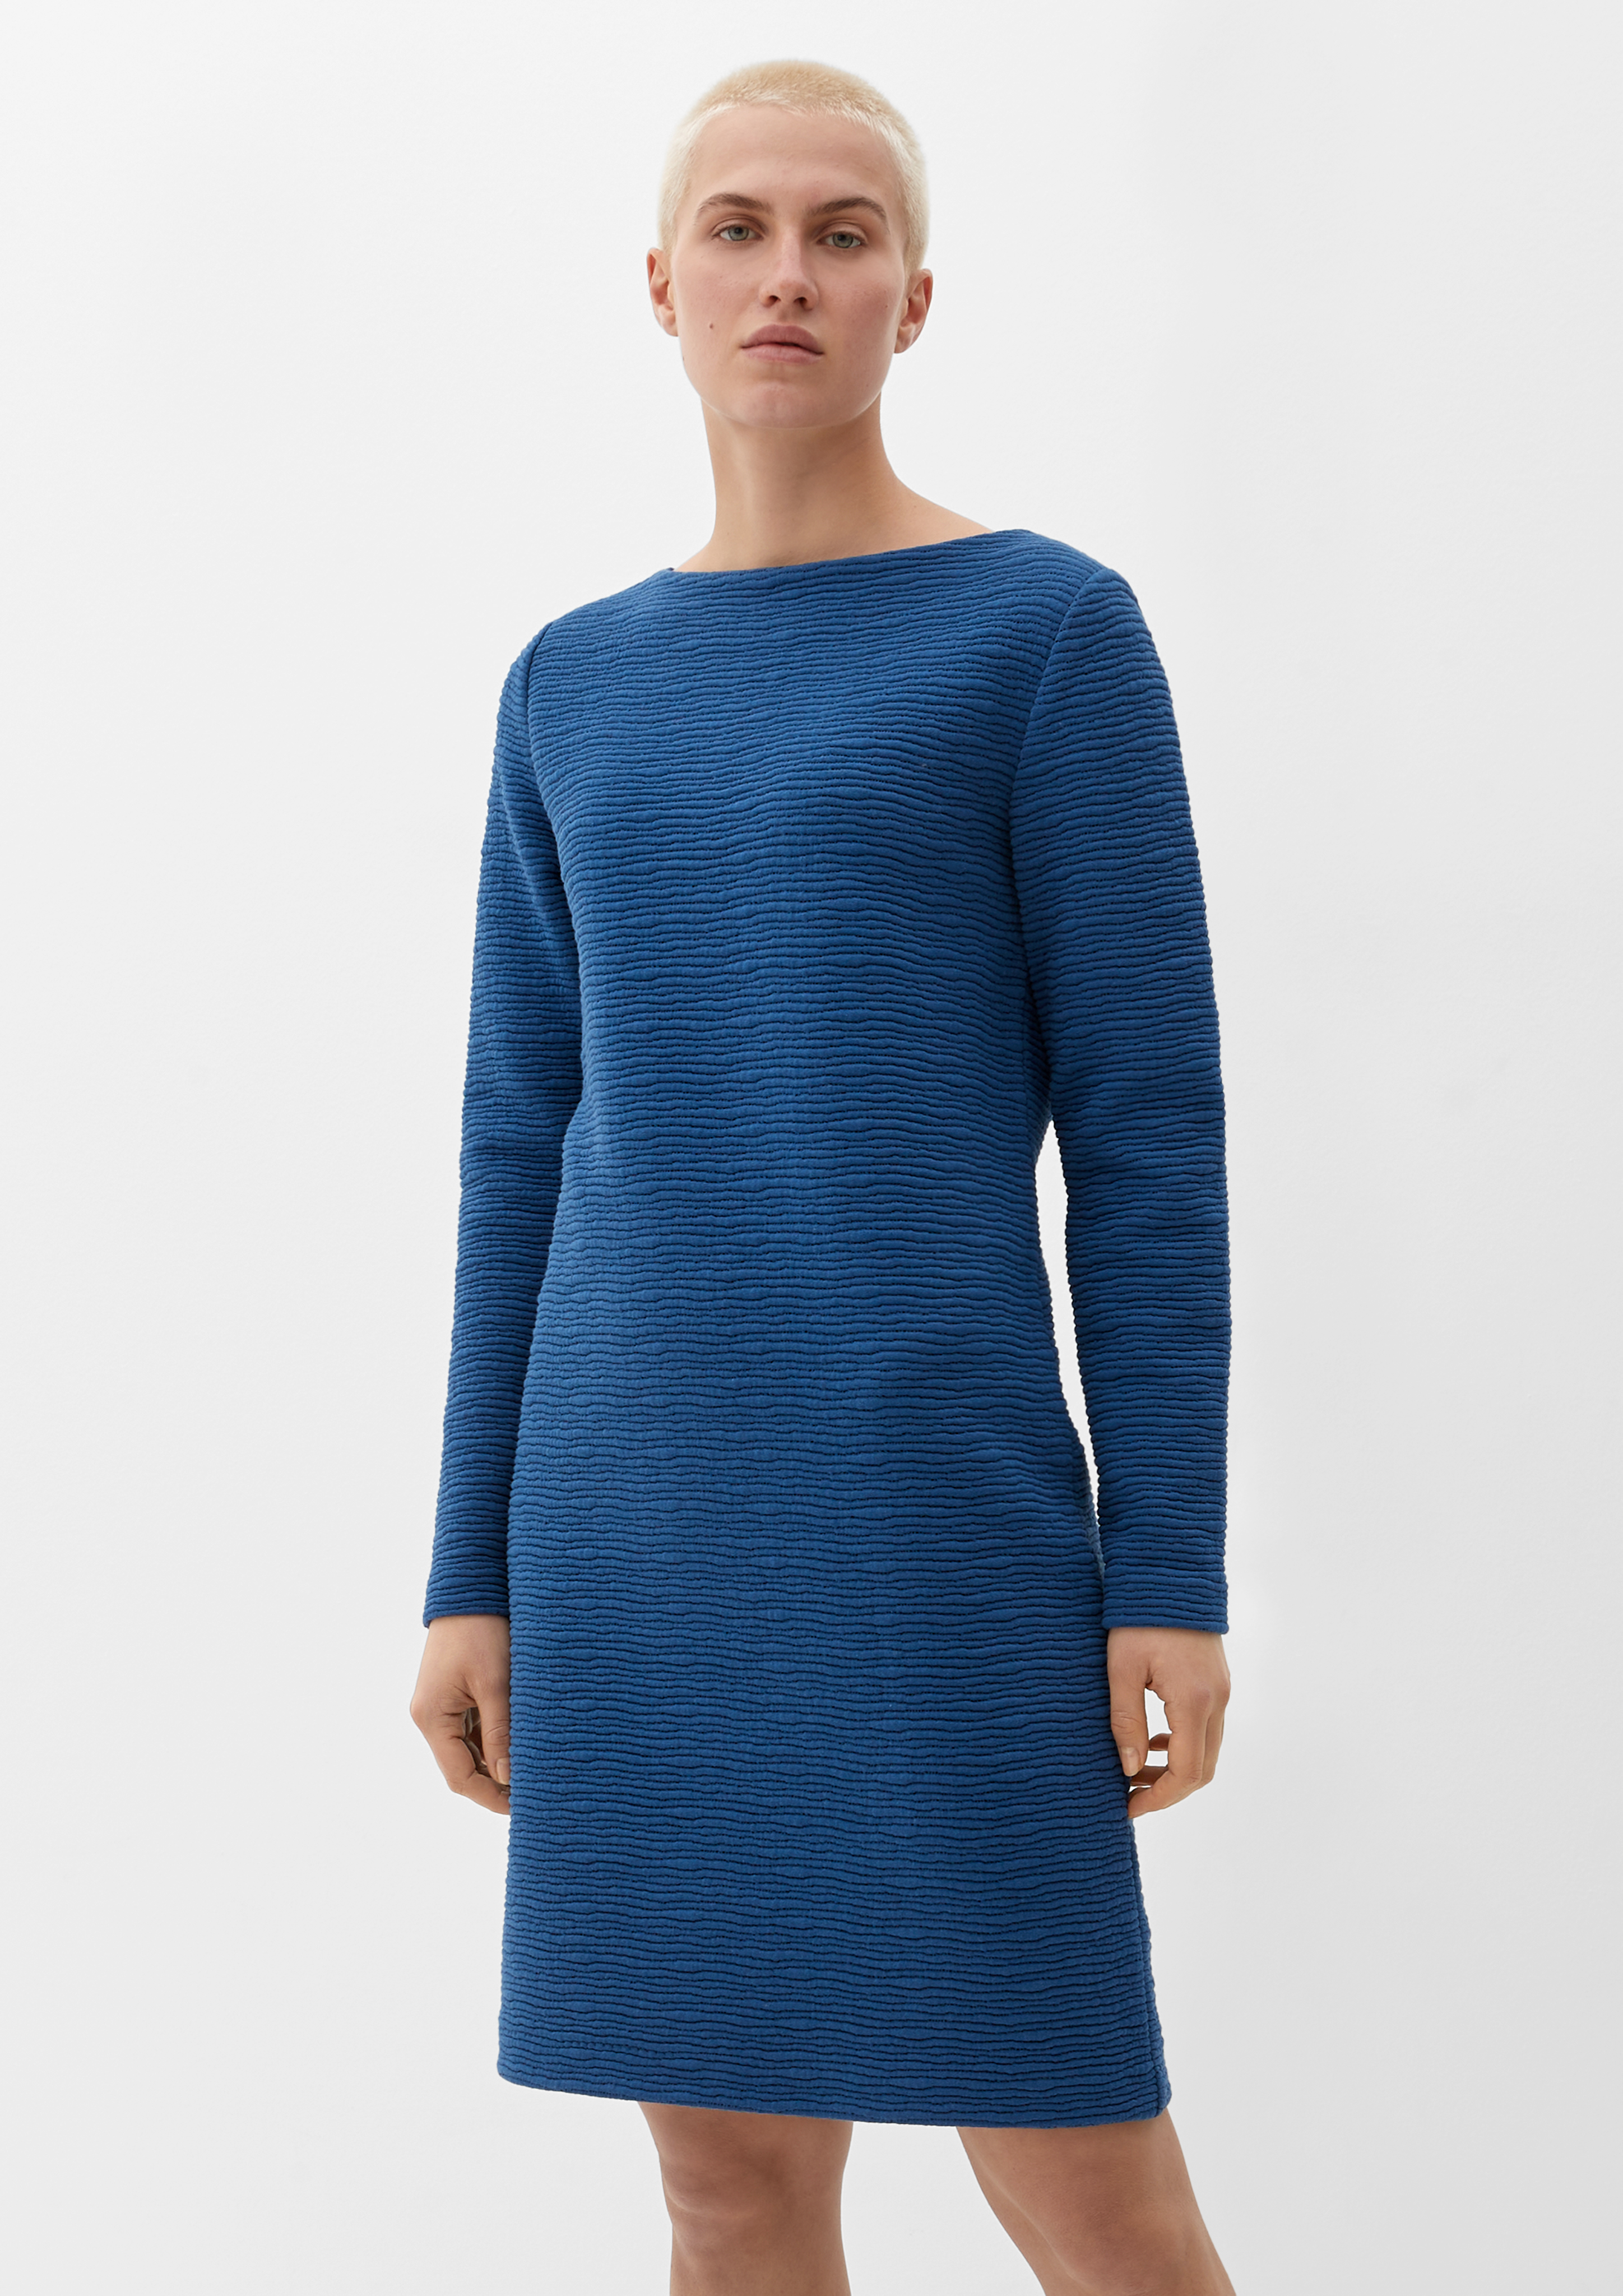 Sweatkleid aus Baumwollmix - ozeanblau